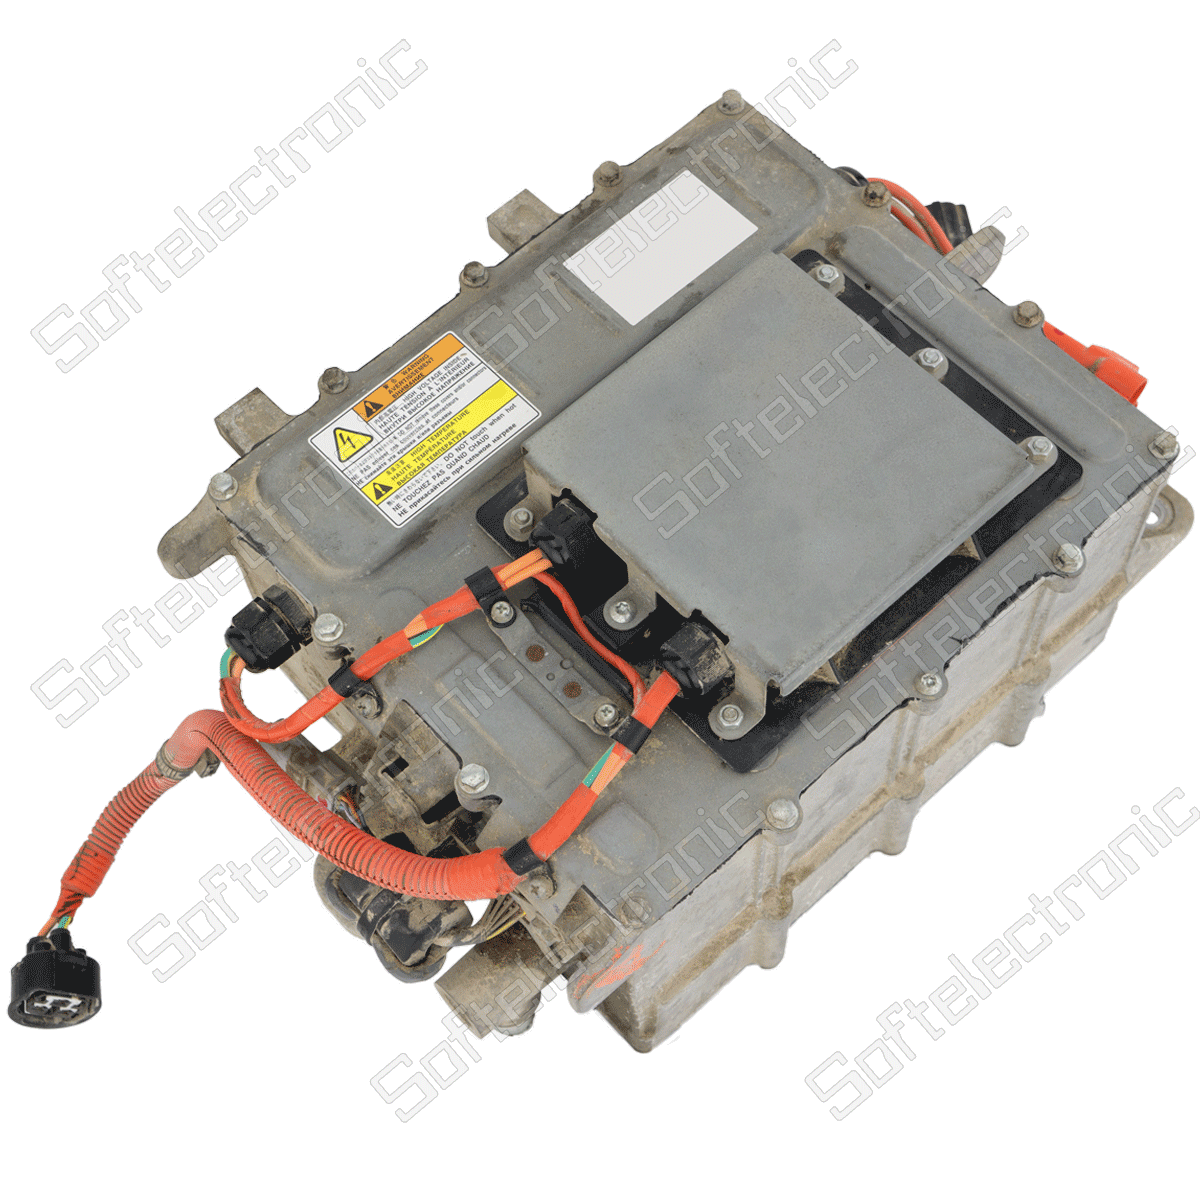 Repair of charging module for electric car Citroen C-Zero